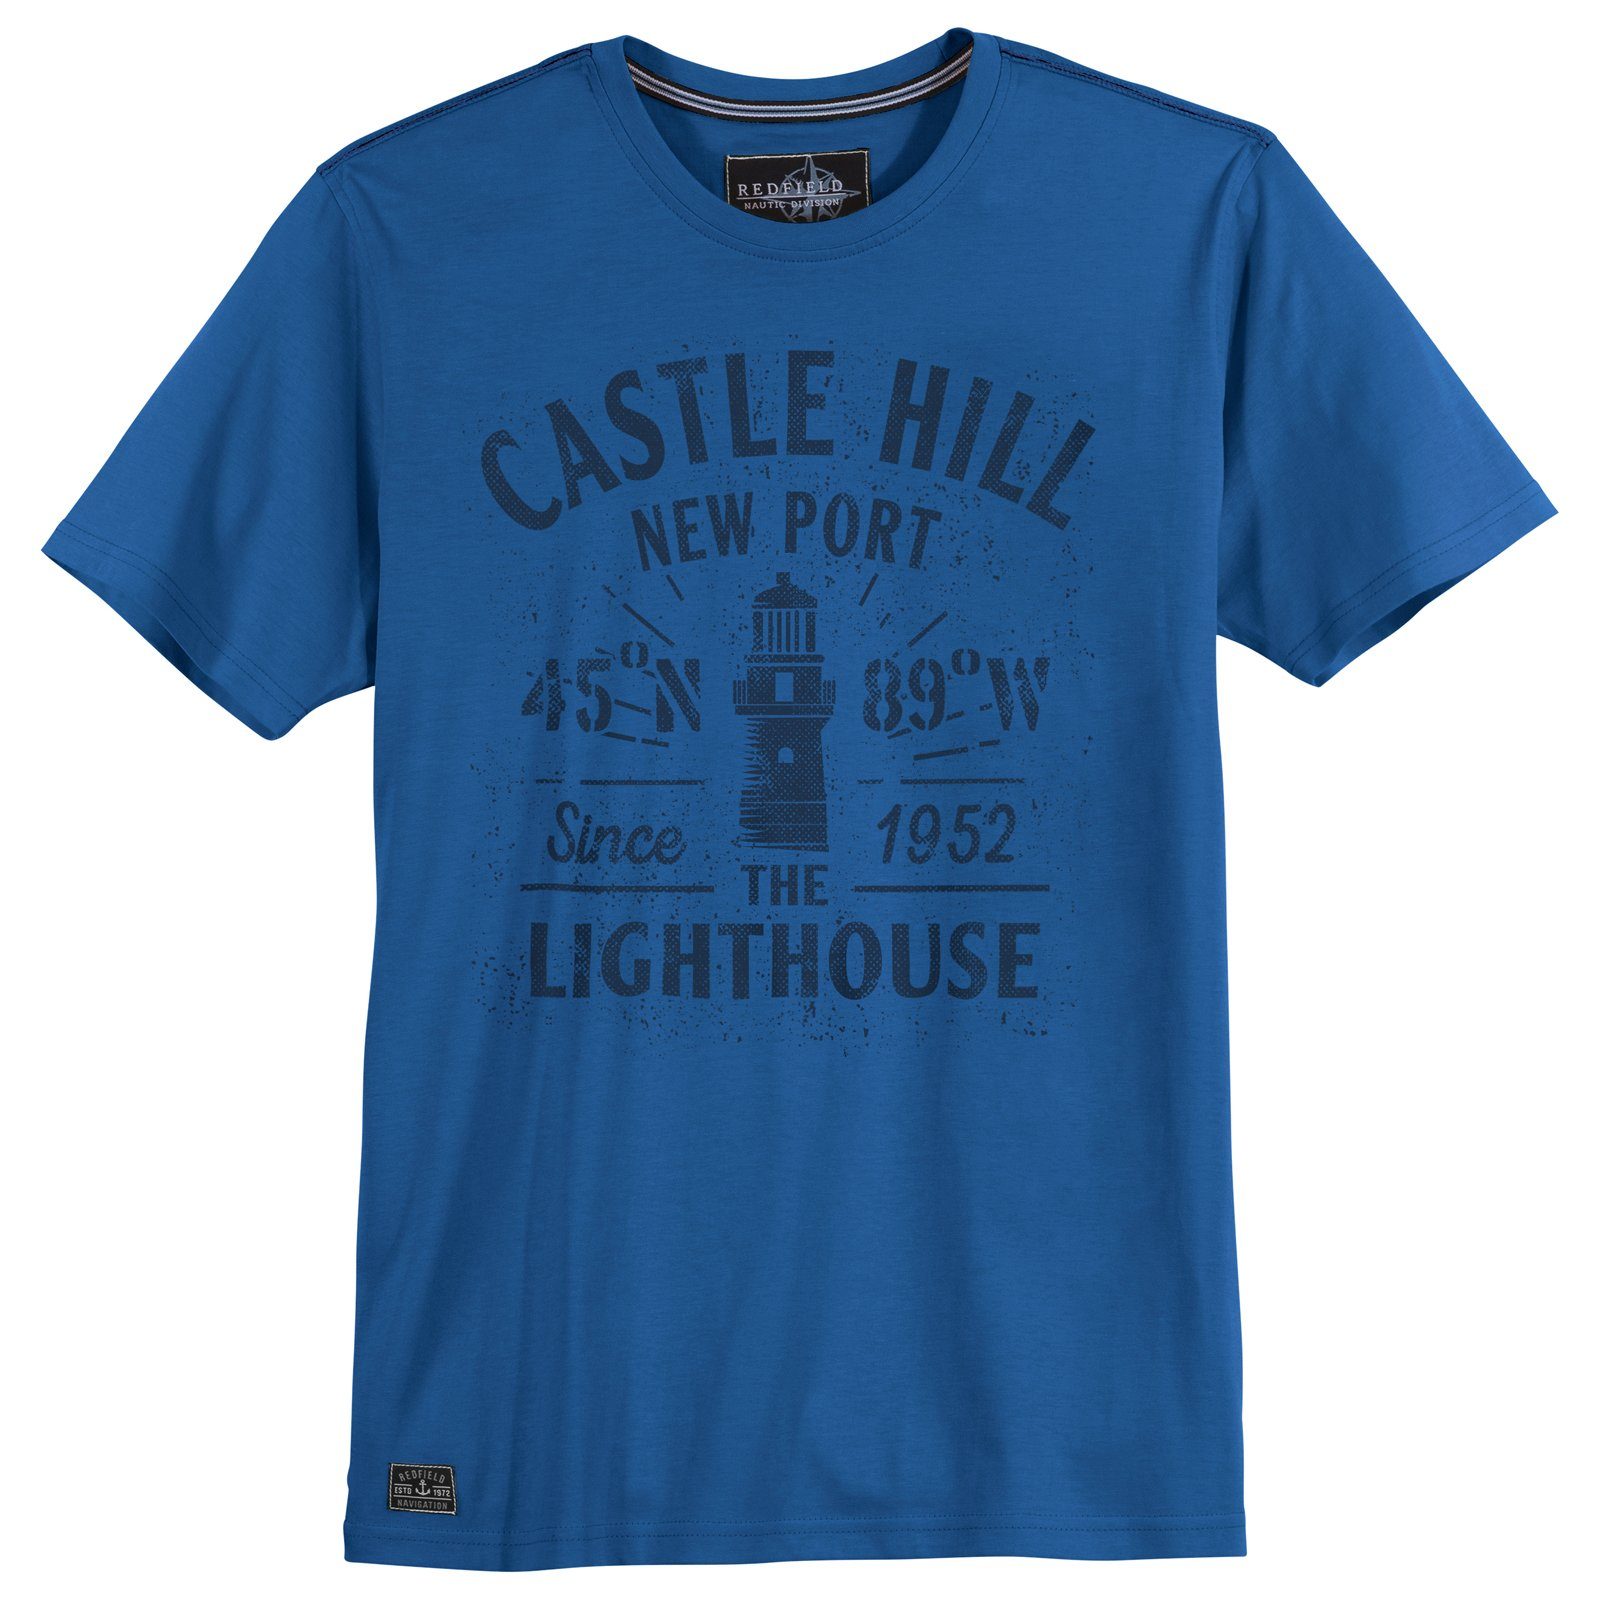 Castle T-Shirt Hill Größen Redfield Große redfield blau Herren Rundhalsshirt